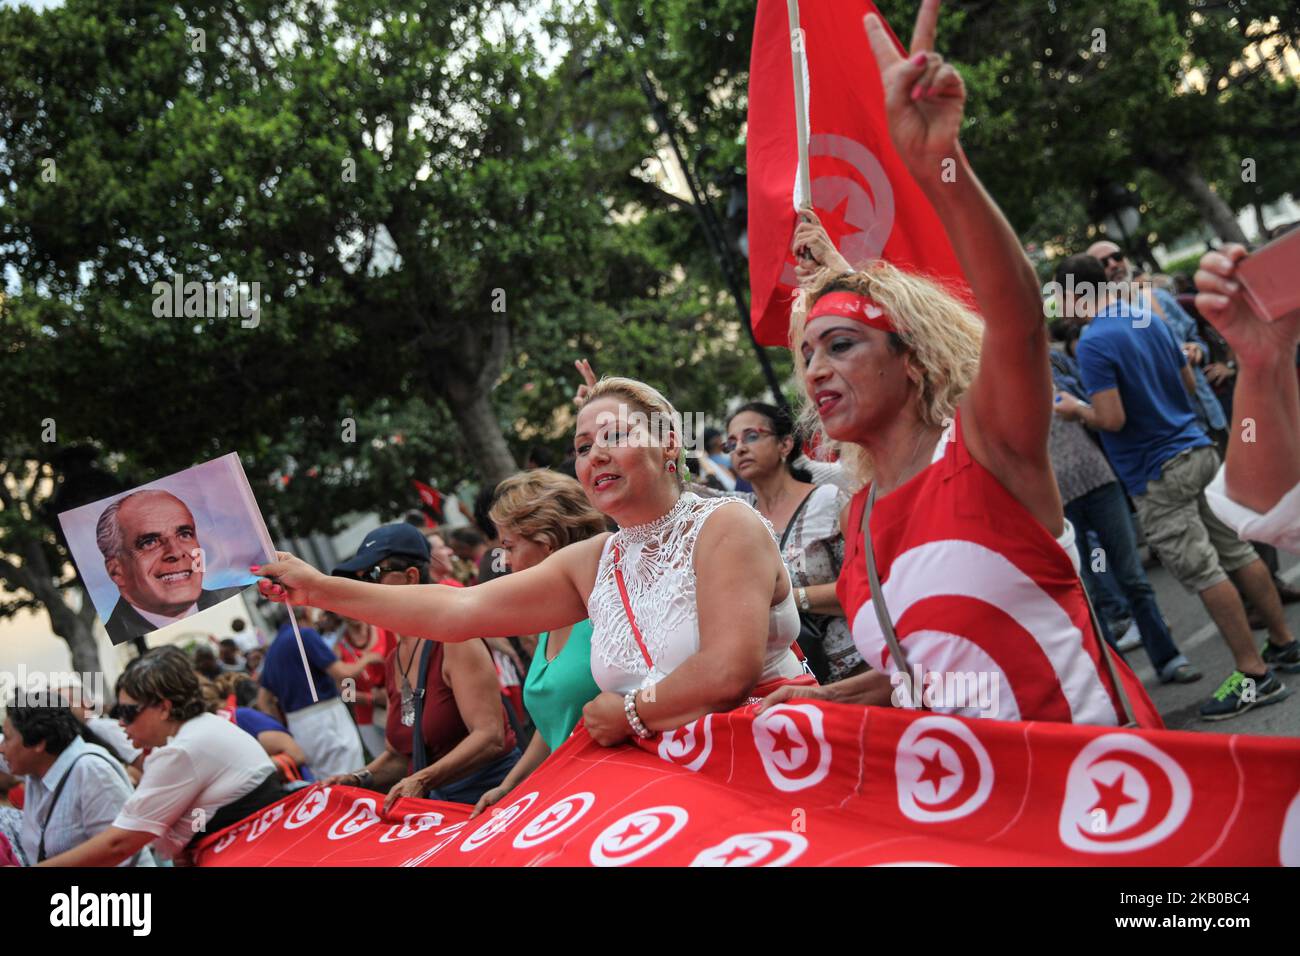 Una donna che indossa la bandiera tunisina fa il segno della vittoria, mentre un’altra donna emana un’aporiadel precedente presidente tunisino, Habib Bourguiba, durante la celebrazione della Giornata Nazionale della Donna in Avenue Habib Bourguiba a Tunisi, Tunisia, il 13 agosto 2018. I manifestanti hanno chiesto la parità di genere, la parità di successione per le donne, i diritti delle LGBT e i diritti delle donne tunisine. I manifestanti hanno protestato anche contro il partito islamico Ennahda e hanno espresso il loro sostegno al Comitato per le libertà individuali e l'uguaglianza (COLIBE). All’inizio della giornata, il presidente tunisino, Beji Coid Essebsi, ha annunciato che il disegno di legge o Foto Stock